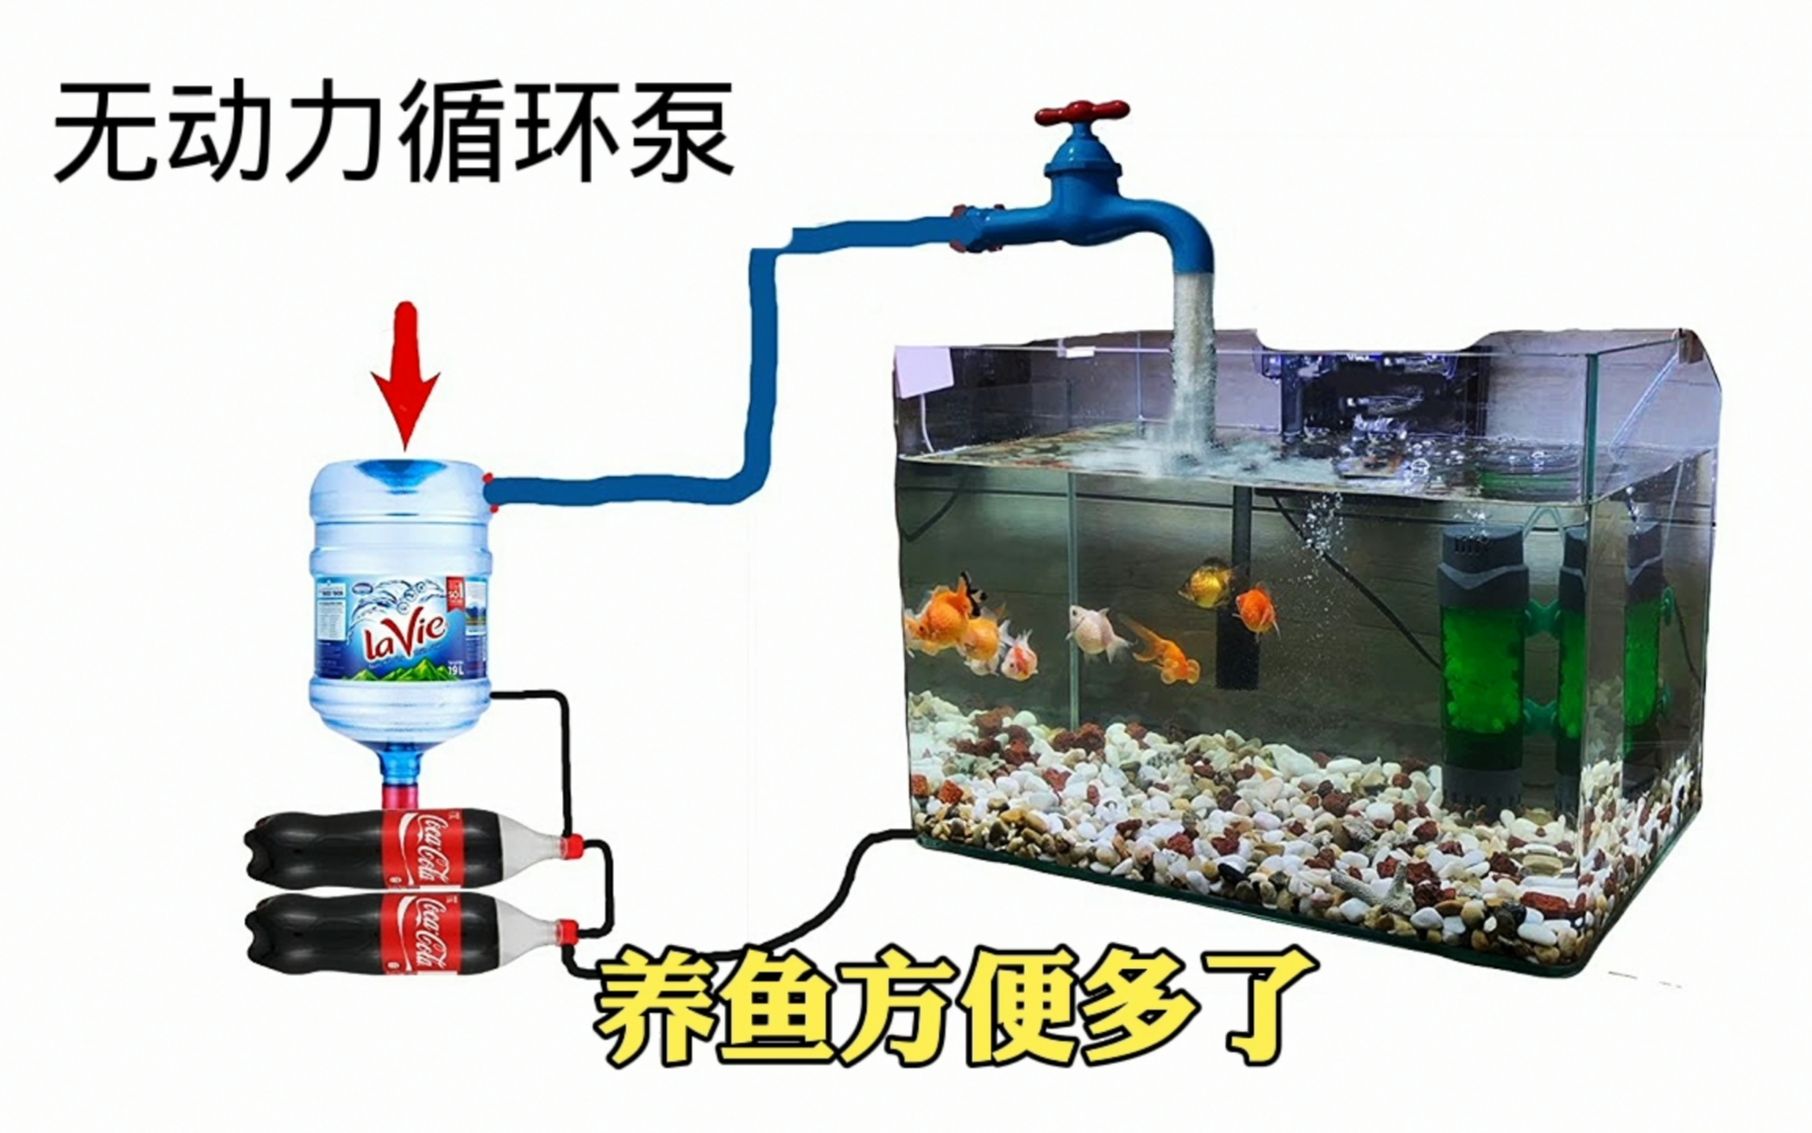 自制鱼缸无动力循环泵,用矿泉水瓶就能做成,一年又能省不少电费